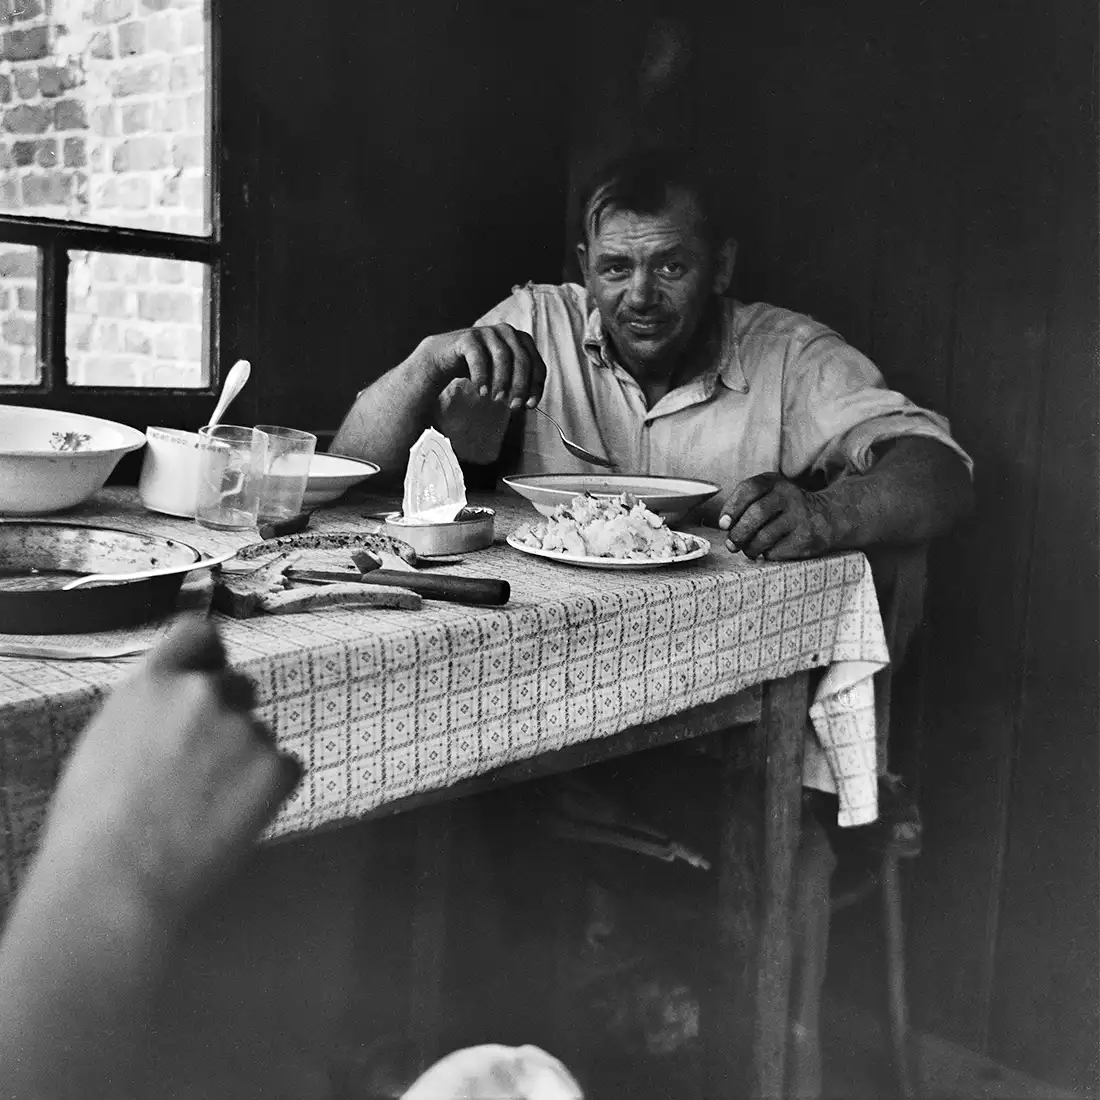 mężczyzna jedzący zupę, siedzący przy stole we wnętrzu